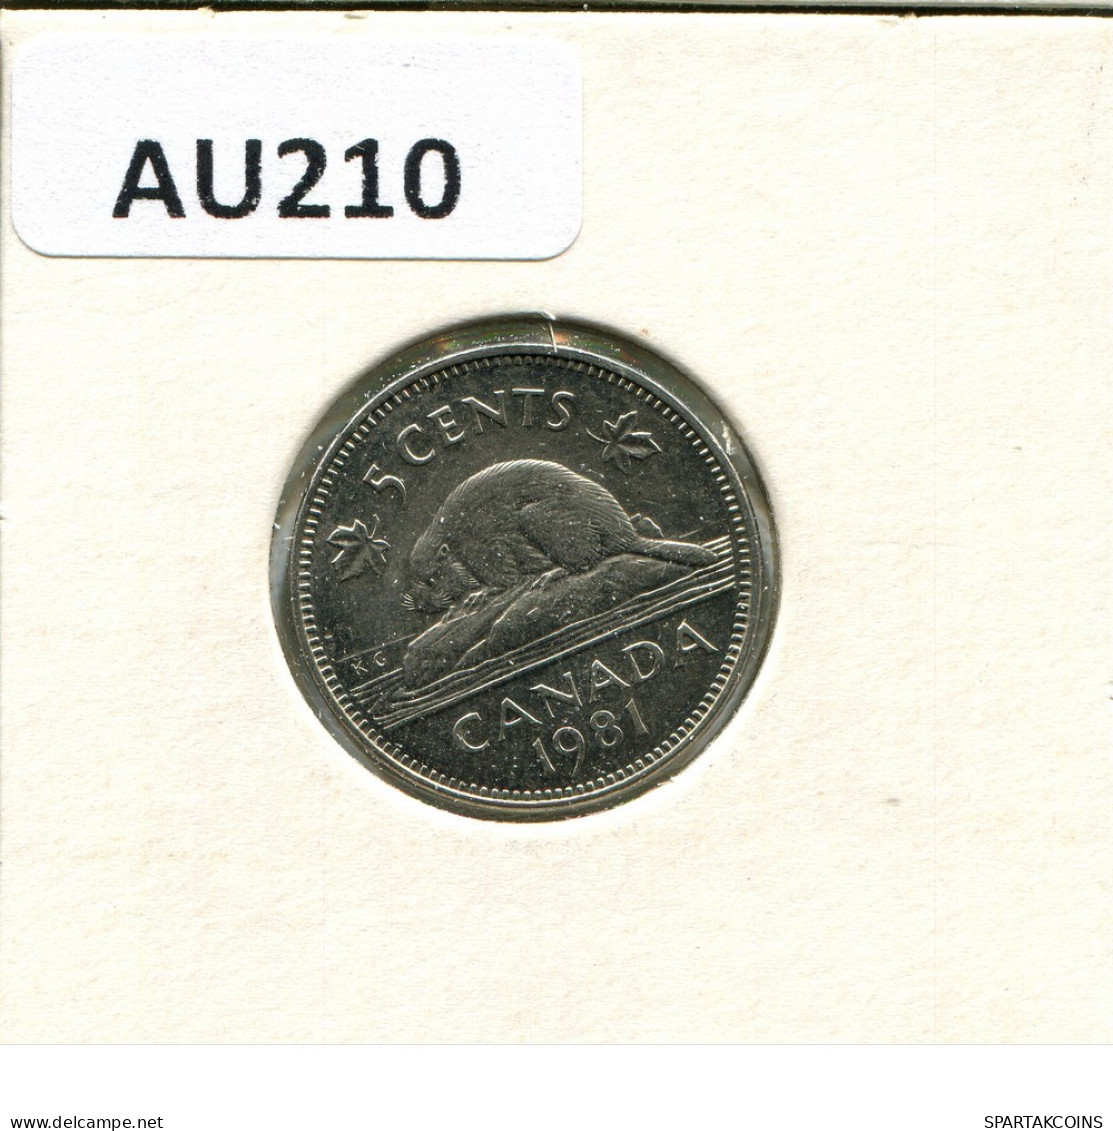 5 CENT 1981 CANADA Moneda #AU210.E.A - Canada